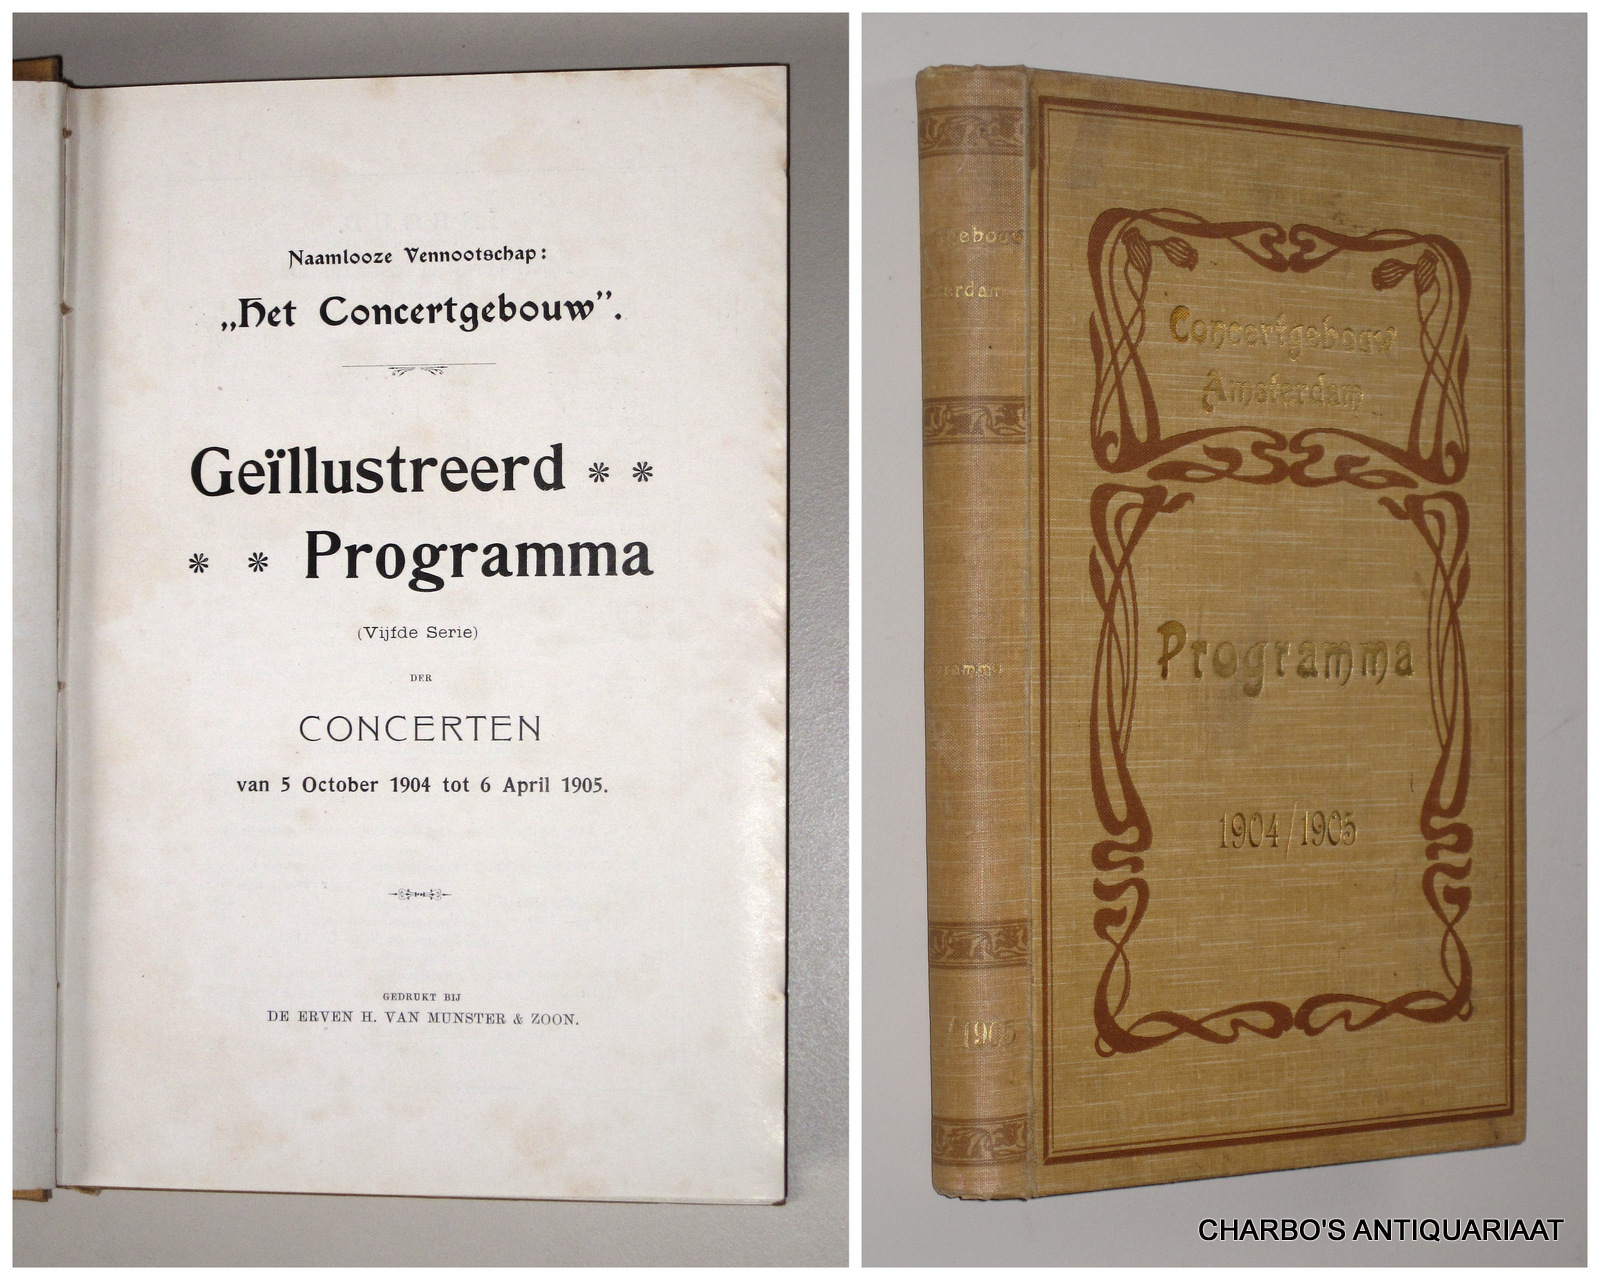 CONCERTGEBOUW, NAAMLOOZE VENNOOTSCHAP HET, -  Gellustreerd programma (vijfde serie) der concerten van 5 October 1904 tot 6 April 1905.